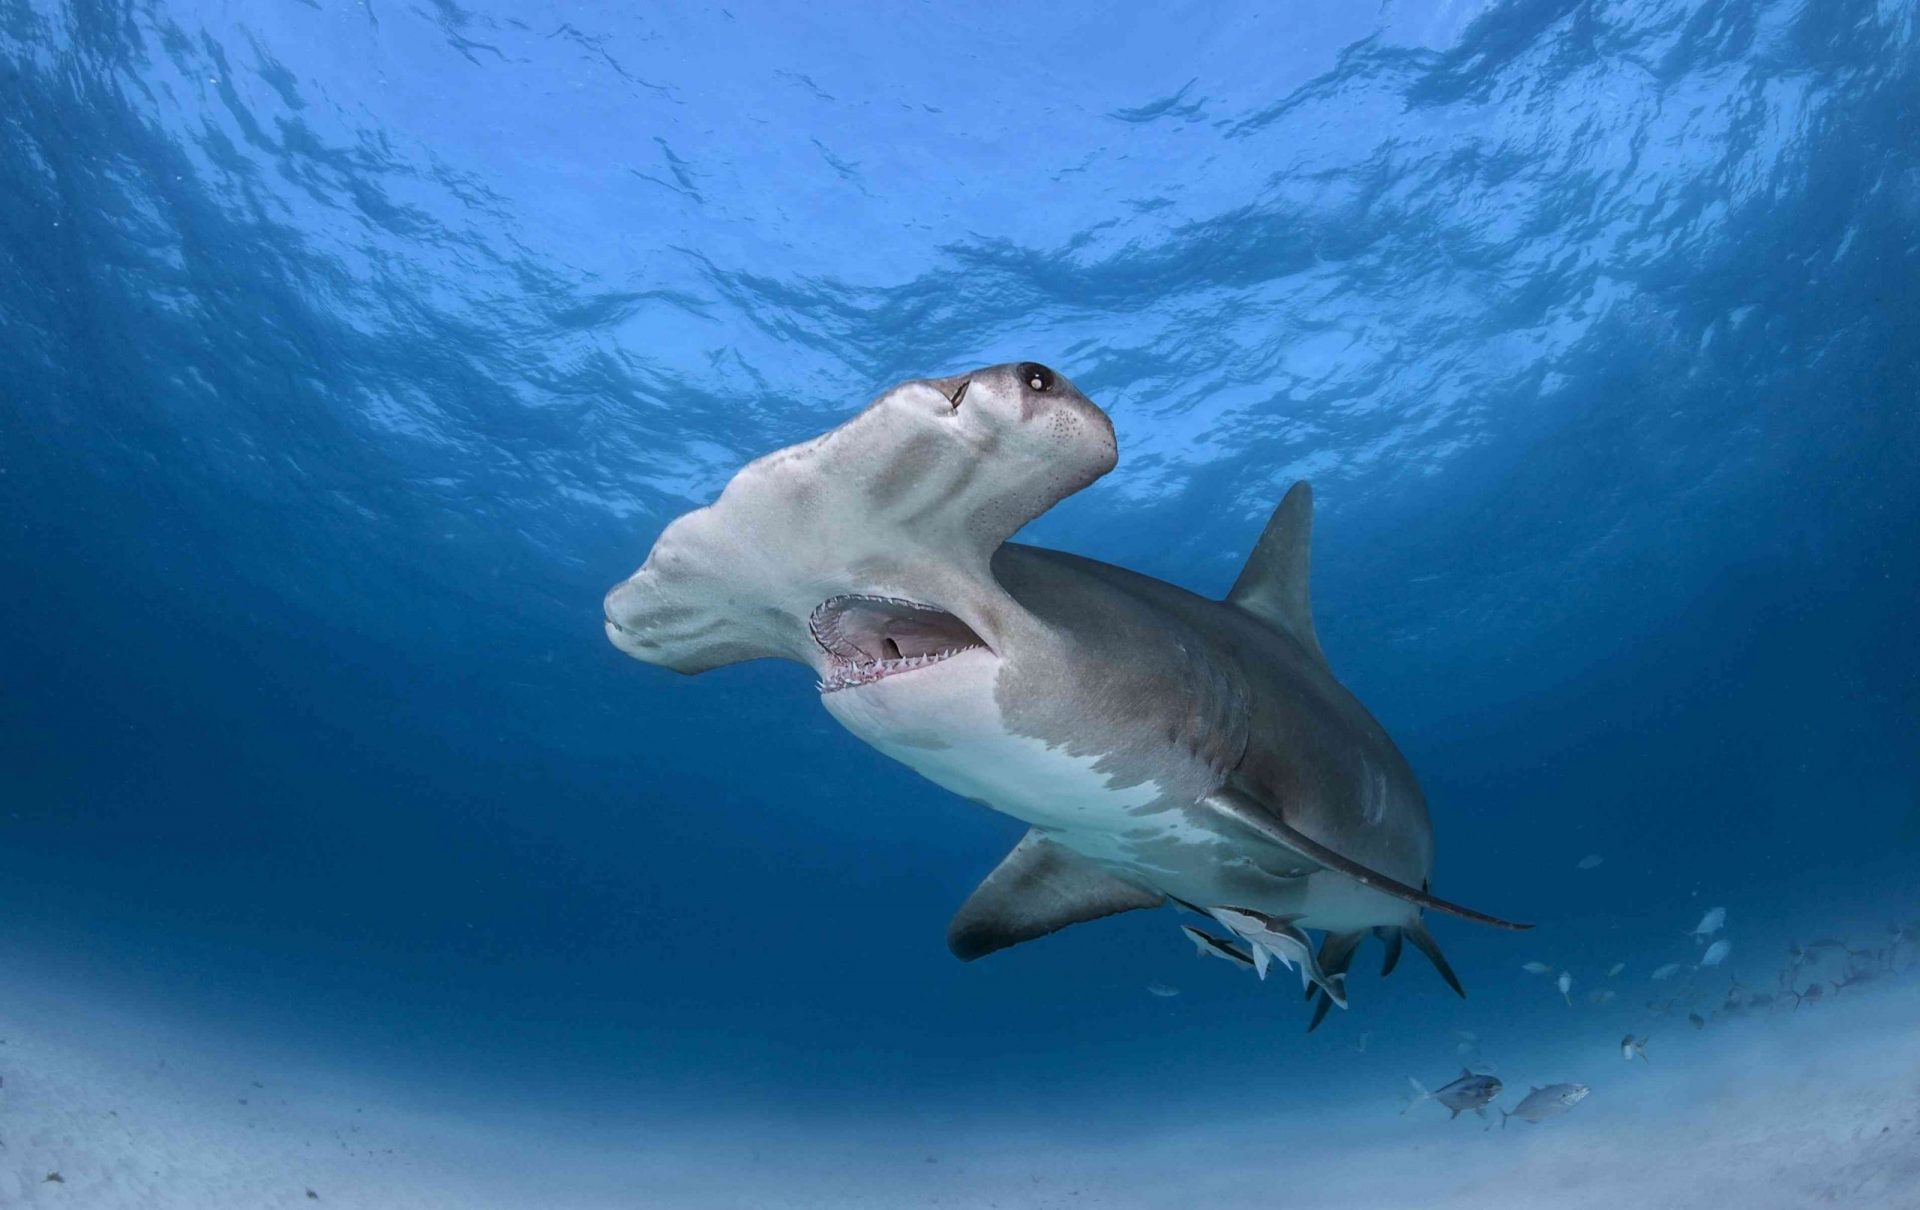 Un tiburón martillo nadando cerca de la superficie del océano con la boca abierta